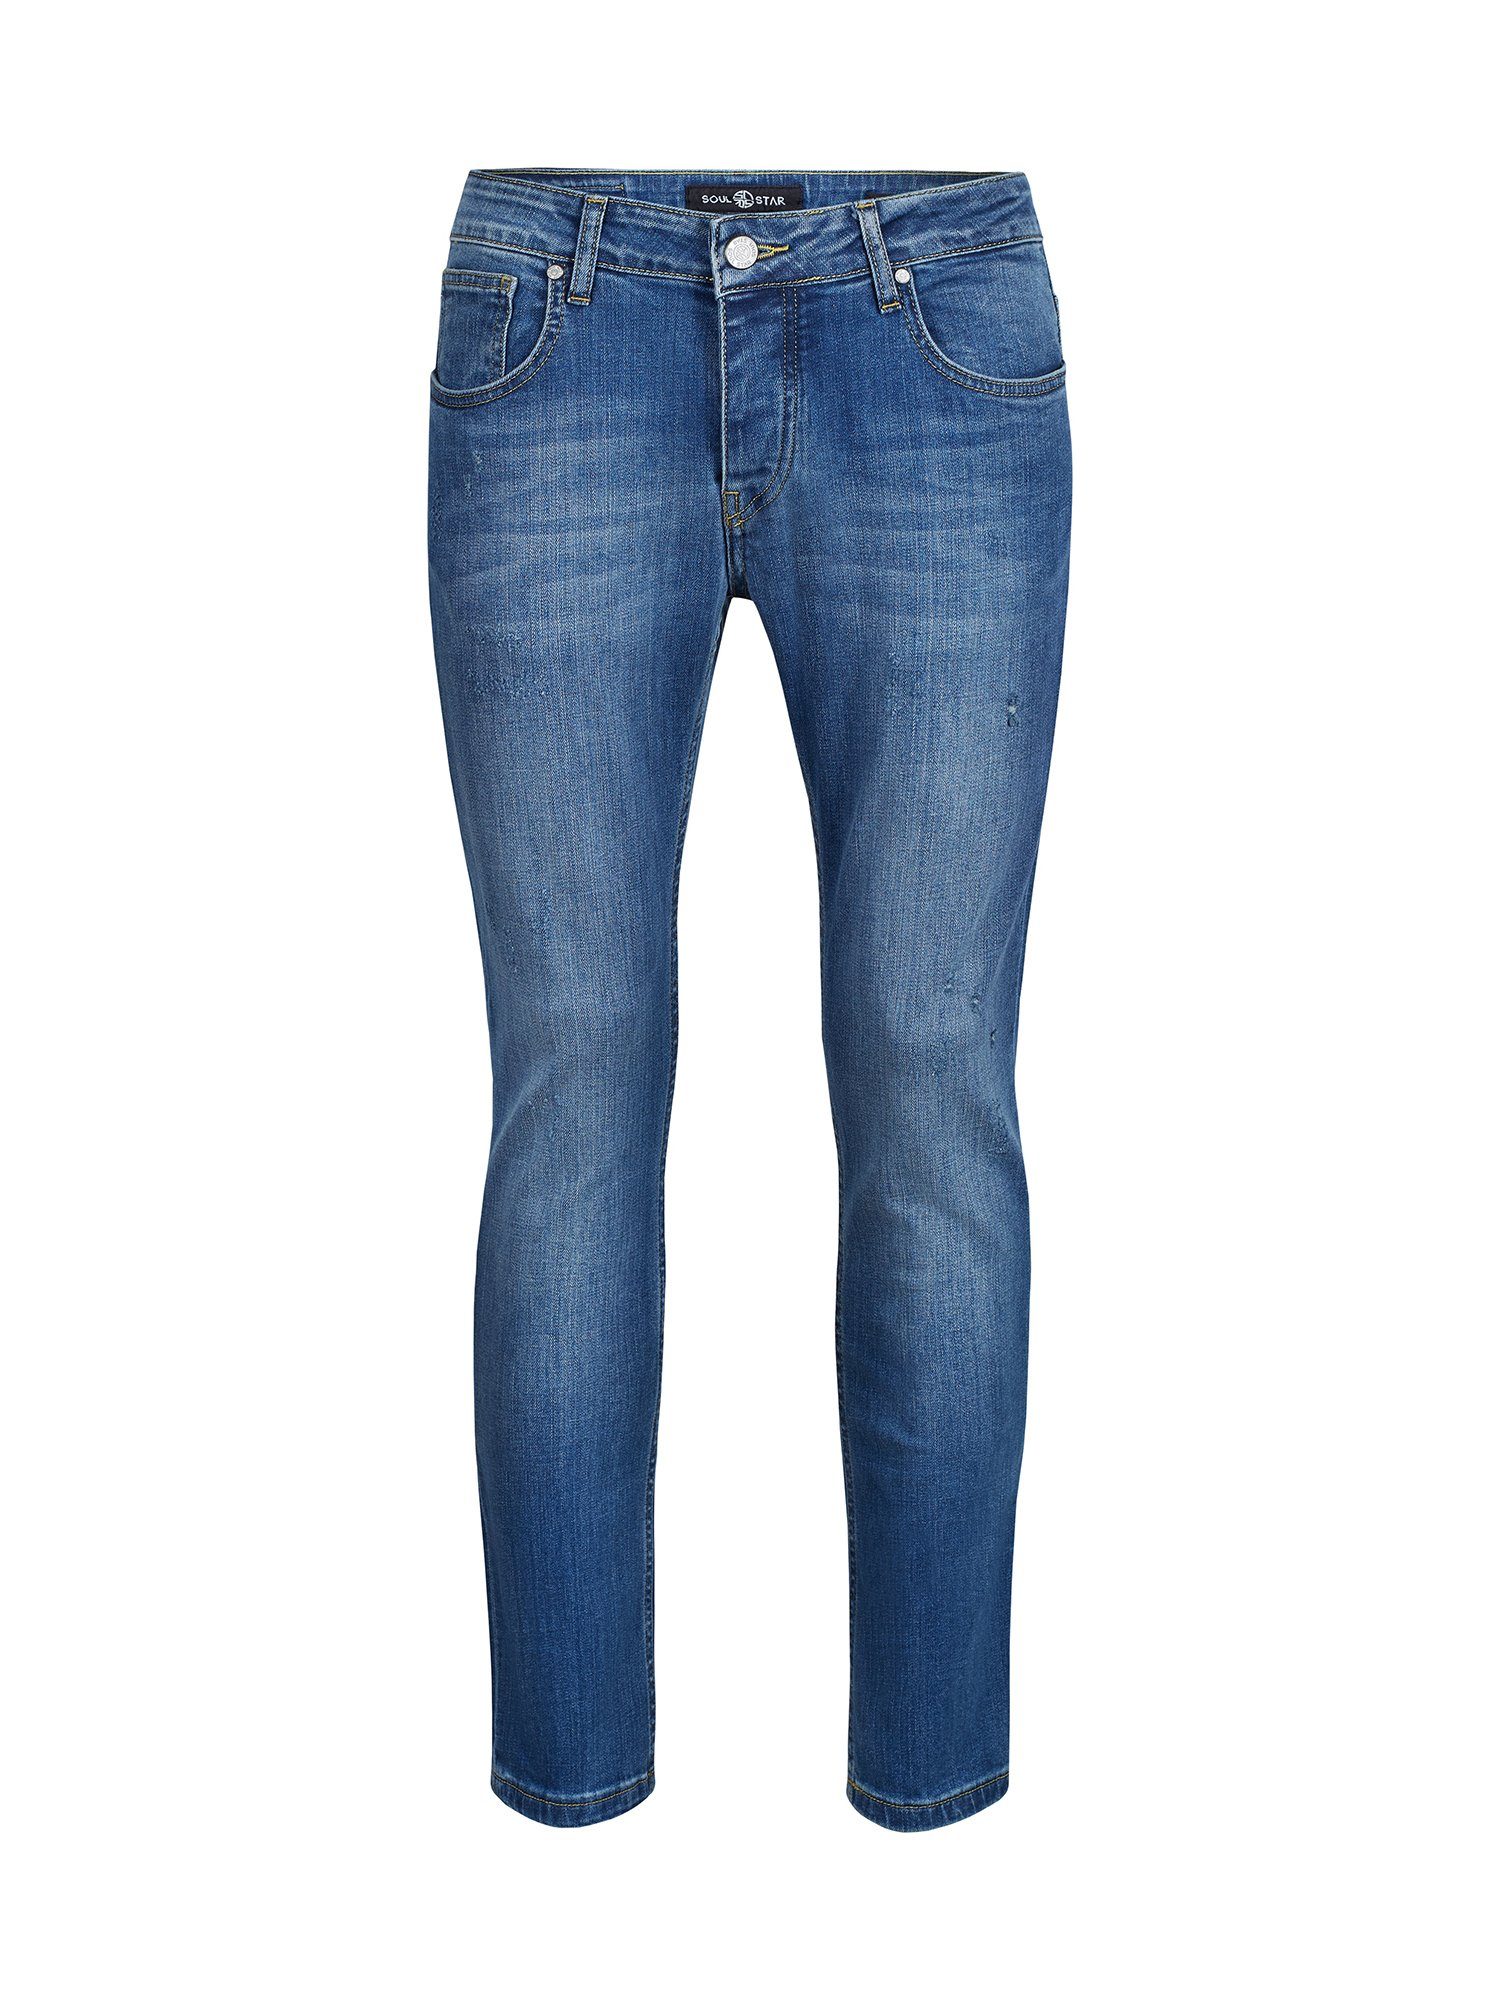 MADRID im SOULSTAR Regular-fit-Jeans hellblau Used-Wash-Stil